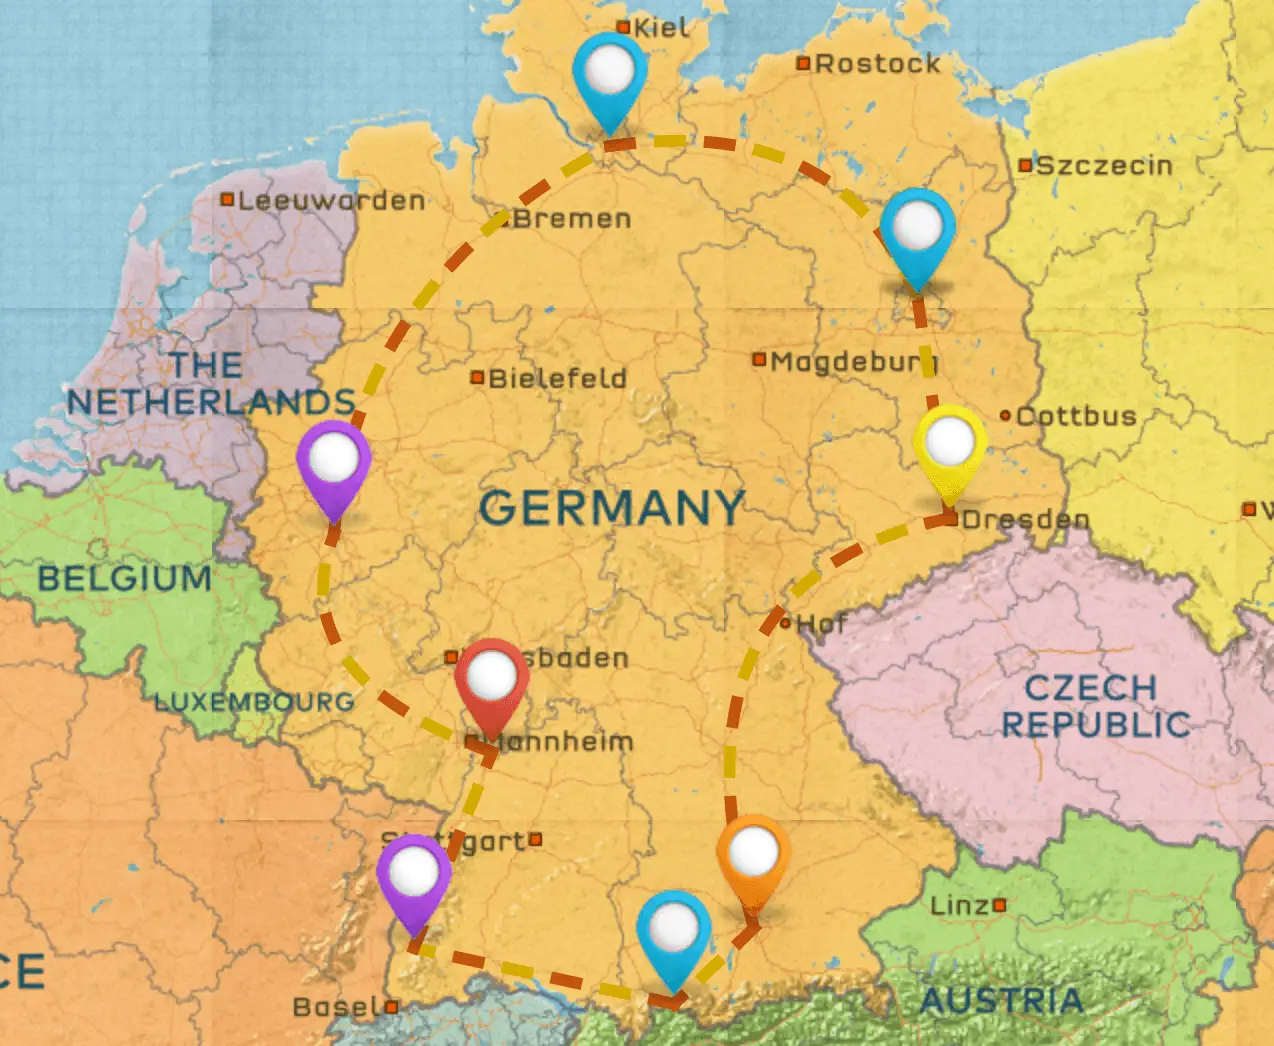 Germany Itinerary #1